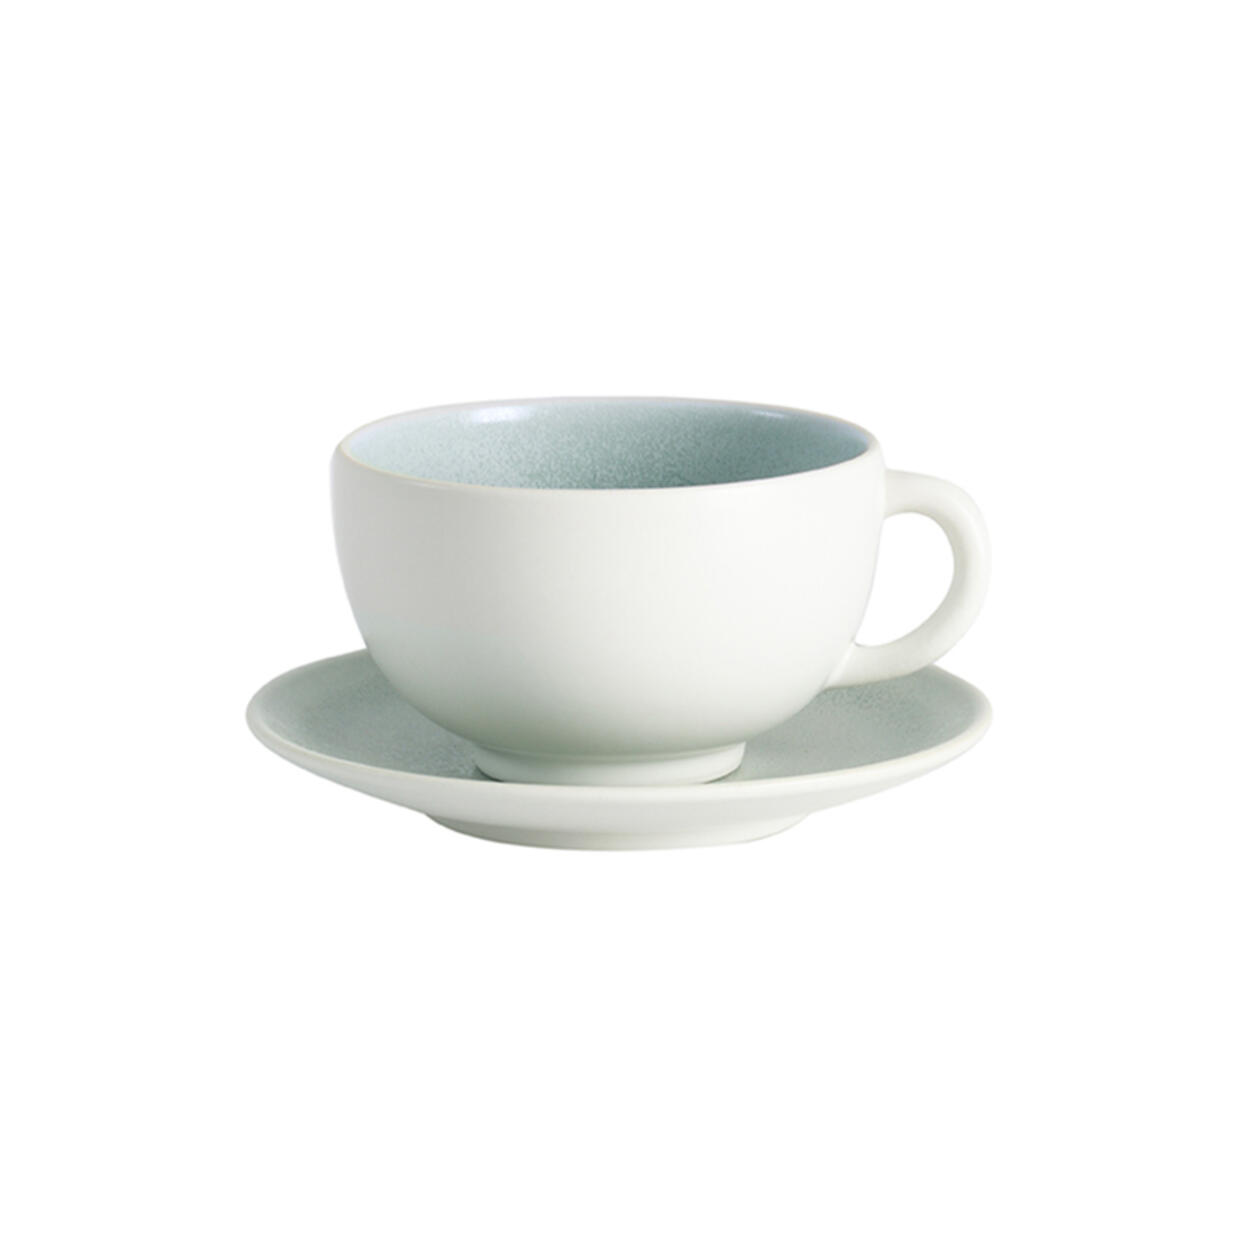 Cup & saucer - L Tourron eucalyptus ceramic manufacturer